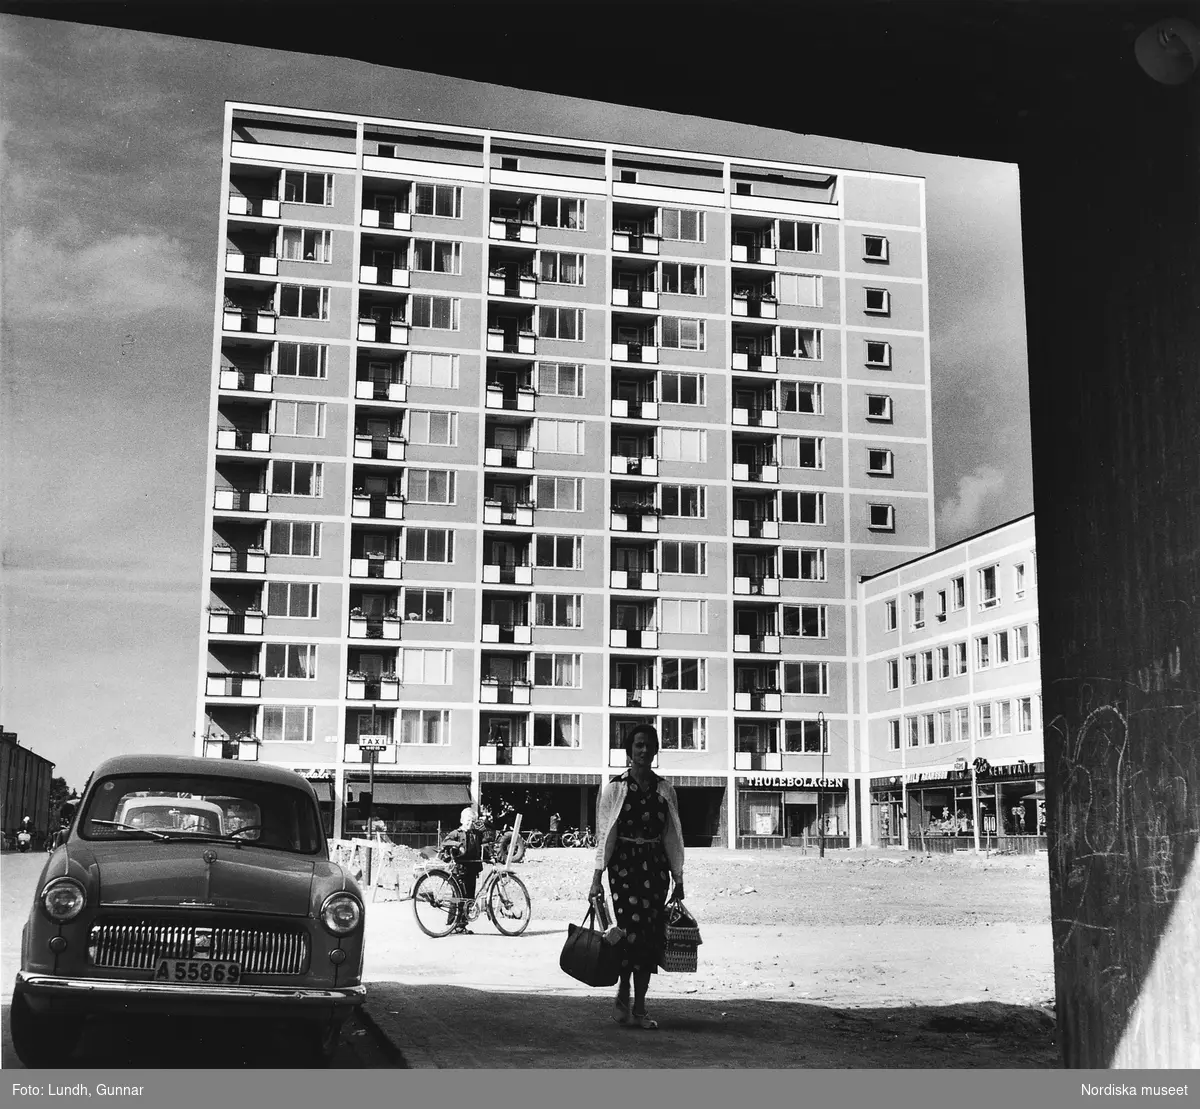 Vy över Västertorps centrum år 1954. En kvinna bär kassar. I bakgrunden ett hyreshus med kontor och butiker i marklplan. Till vänster i bild parkerade bilar.